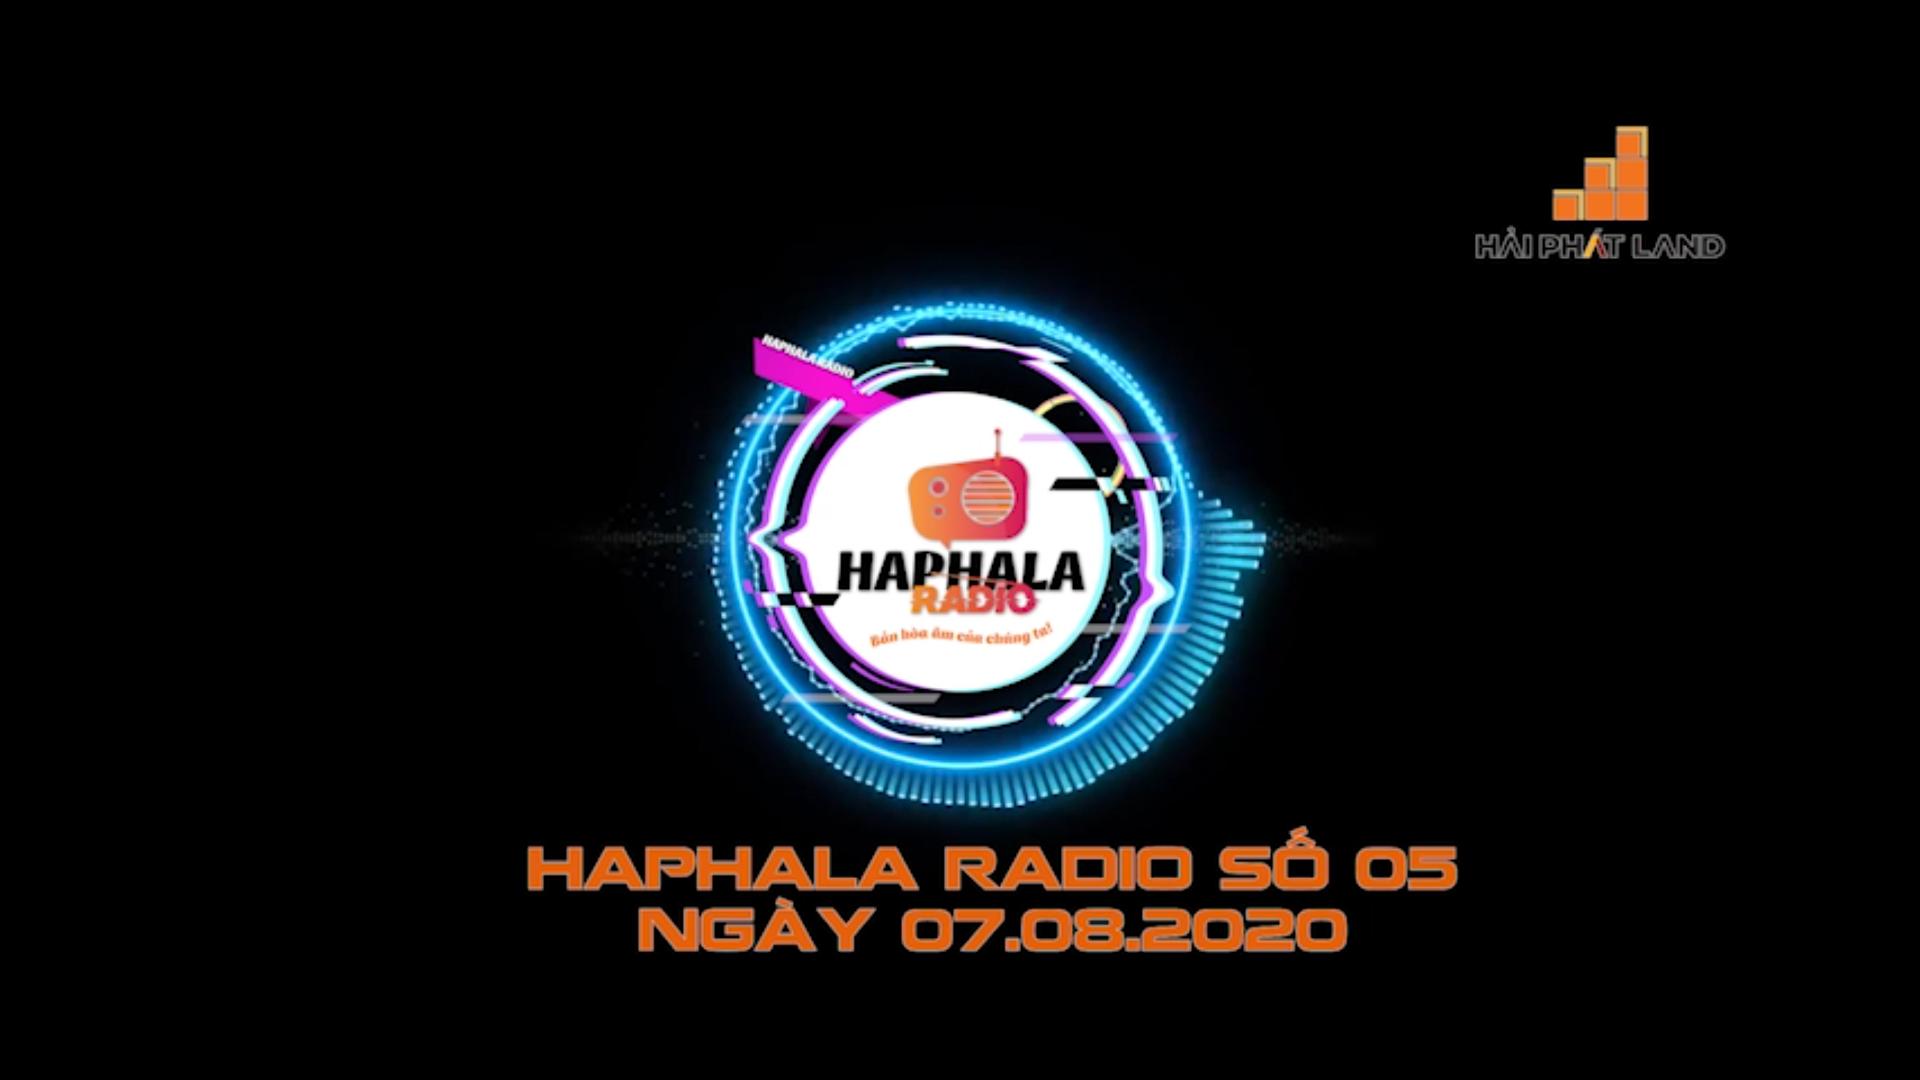 Haphala Radio số 05 ngày 07/08/2020